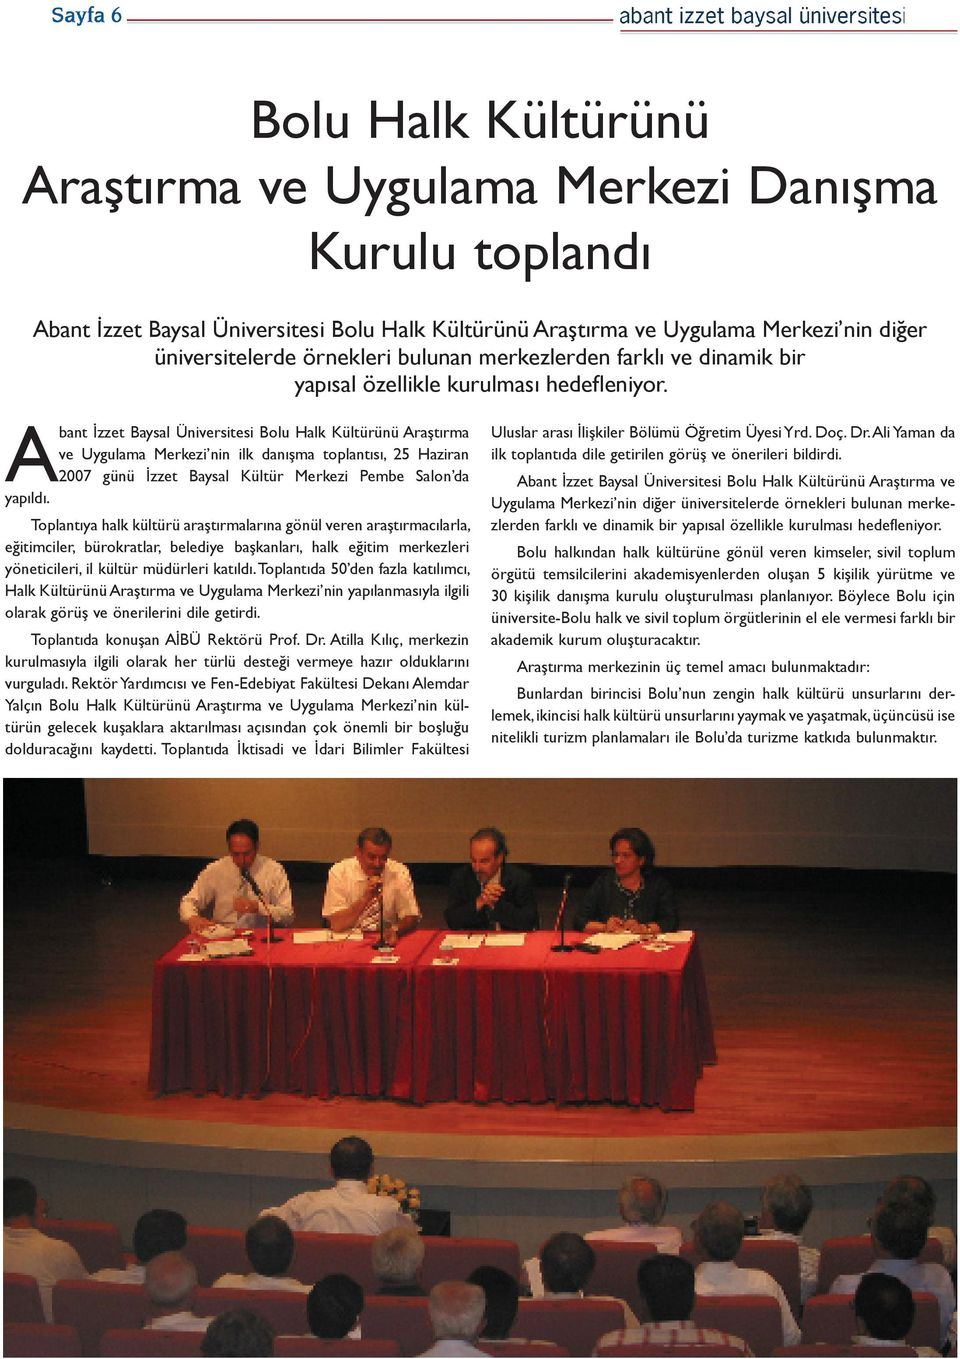 Abant İzzet Baysal Üniversitesi Bolu Halk Kültürünü Araştırma ve Uygulama Merkezi nin ilk danışma toplantısı, 25 Haziran 2007 günü İzzet Baysal Kültür Merkezi Pembe Salon da yapıldı.